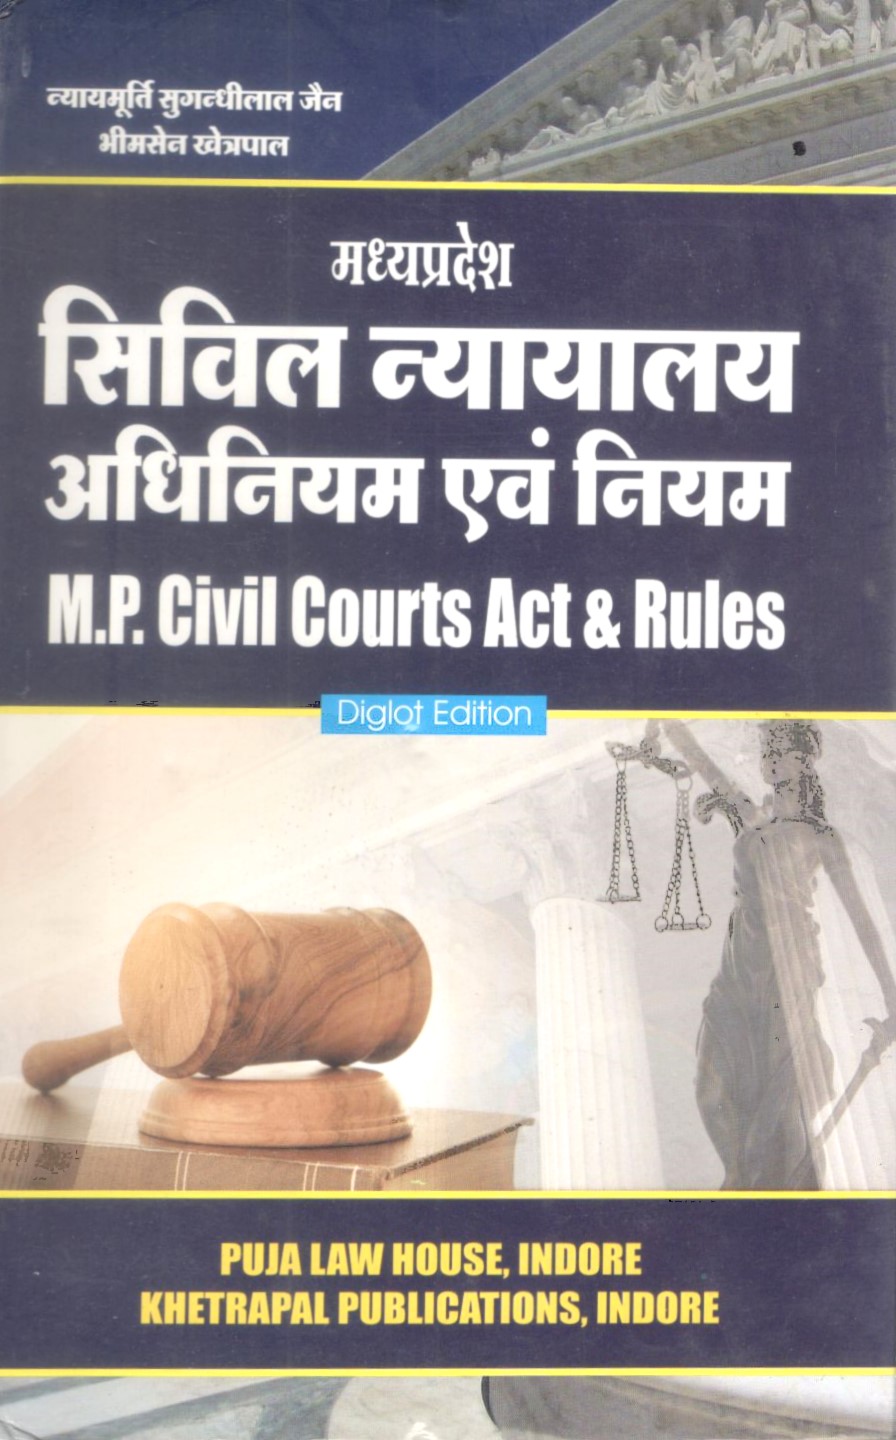 Madhya Pradesh Civil Court Act & Rules / मध्य प्रदेश सिविल न्यायालय अधिनियम एवं नियम